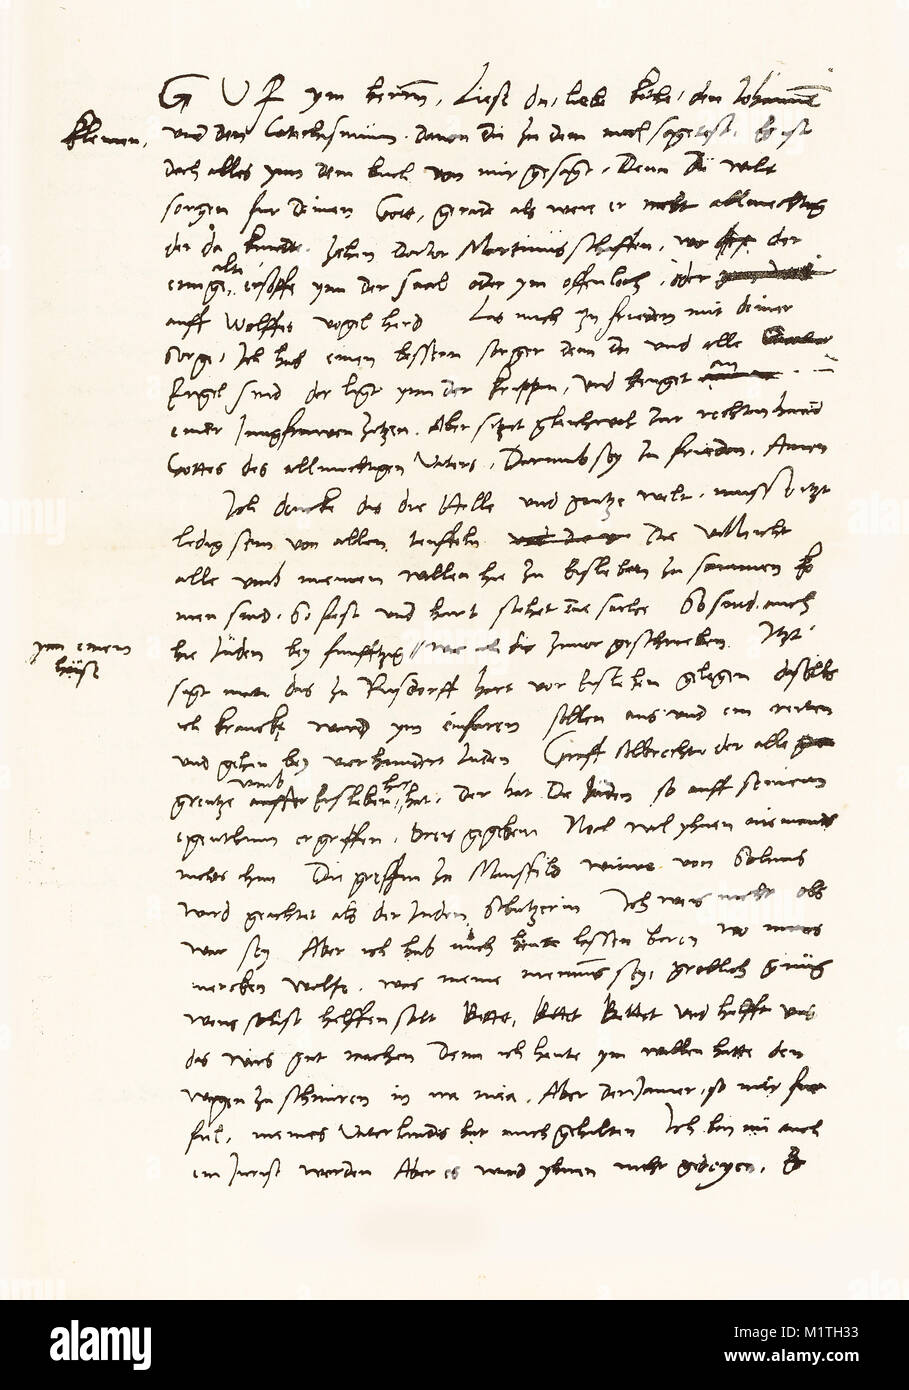 Primer semestre de un facsímile de una carta escrita de Lutero a su esposa el 7 de febrero de 1546. De la vida de Lutero por Kostlin, 1900 Foto de stock